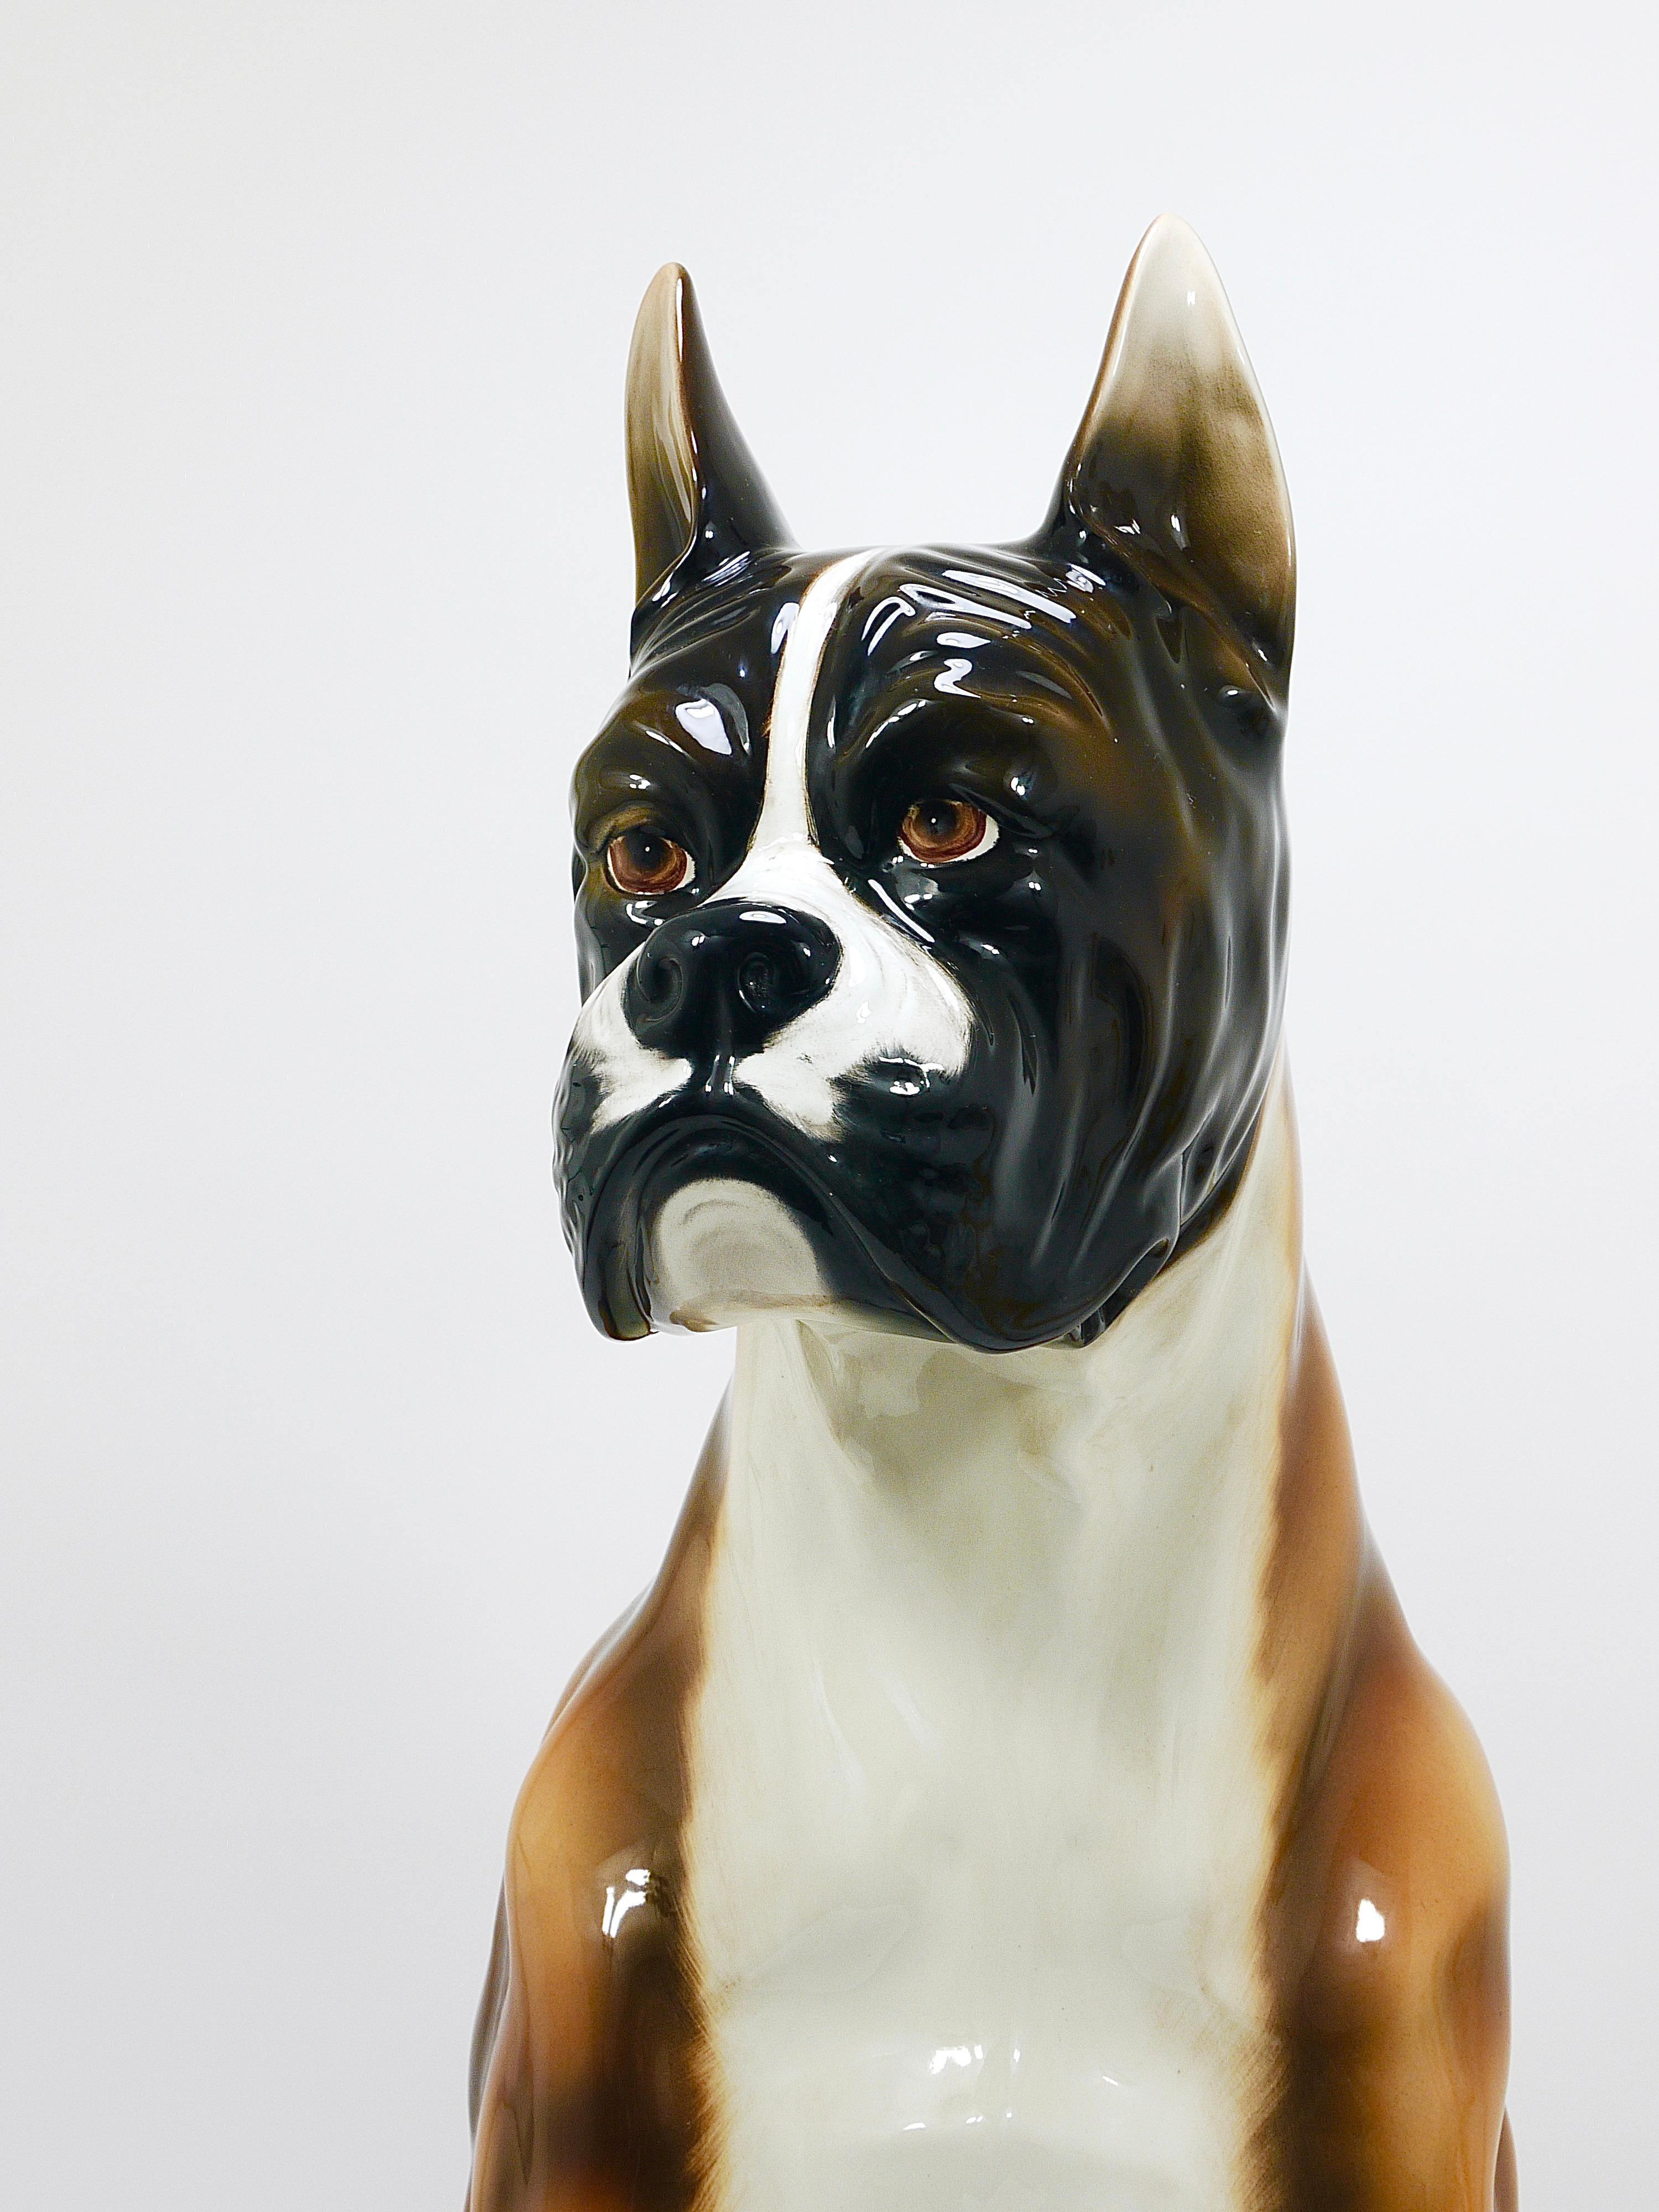 Escultura en mayólica de perro bóxer a tamaño natural, cerámica esmaltada, Italia, años 70 Glaseado en venta